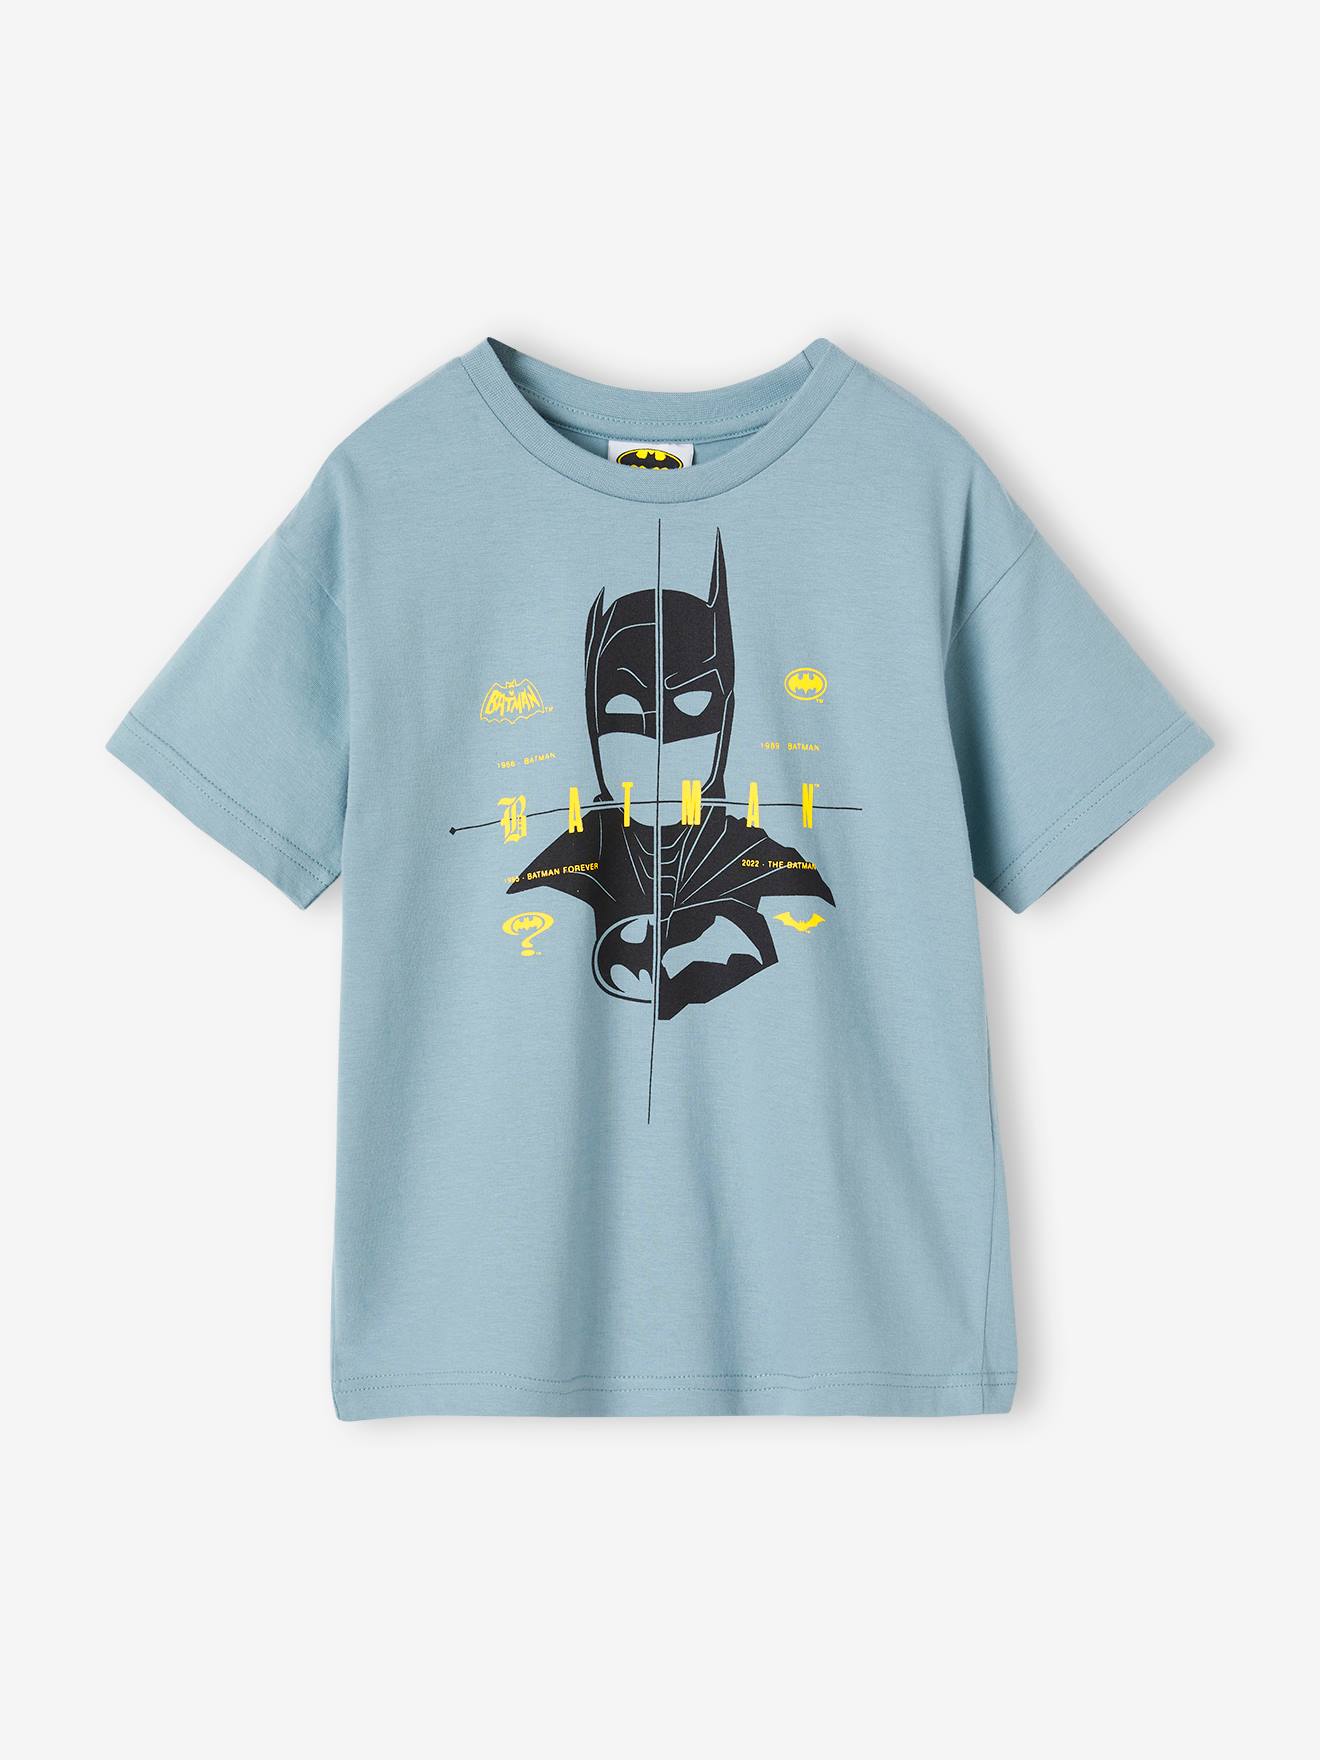 Batman T-Shirt for Boys, by DC Comics(r) navy blue